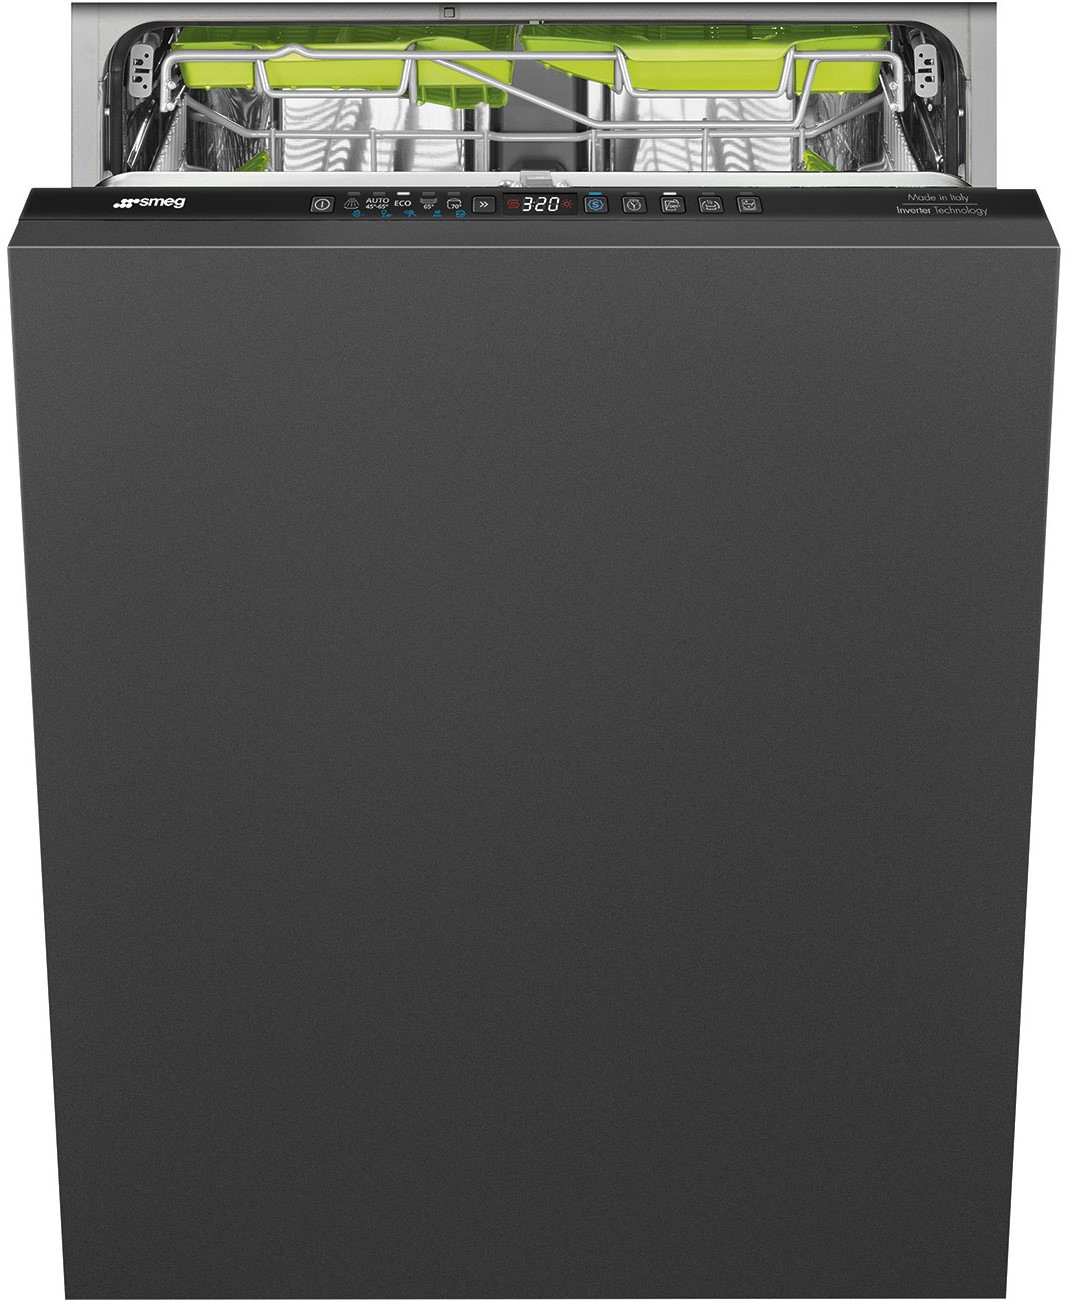 Посудомоечная машина Smeg ST363CL в интернет-магазине, главное фото